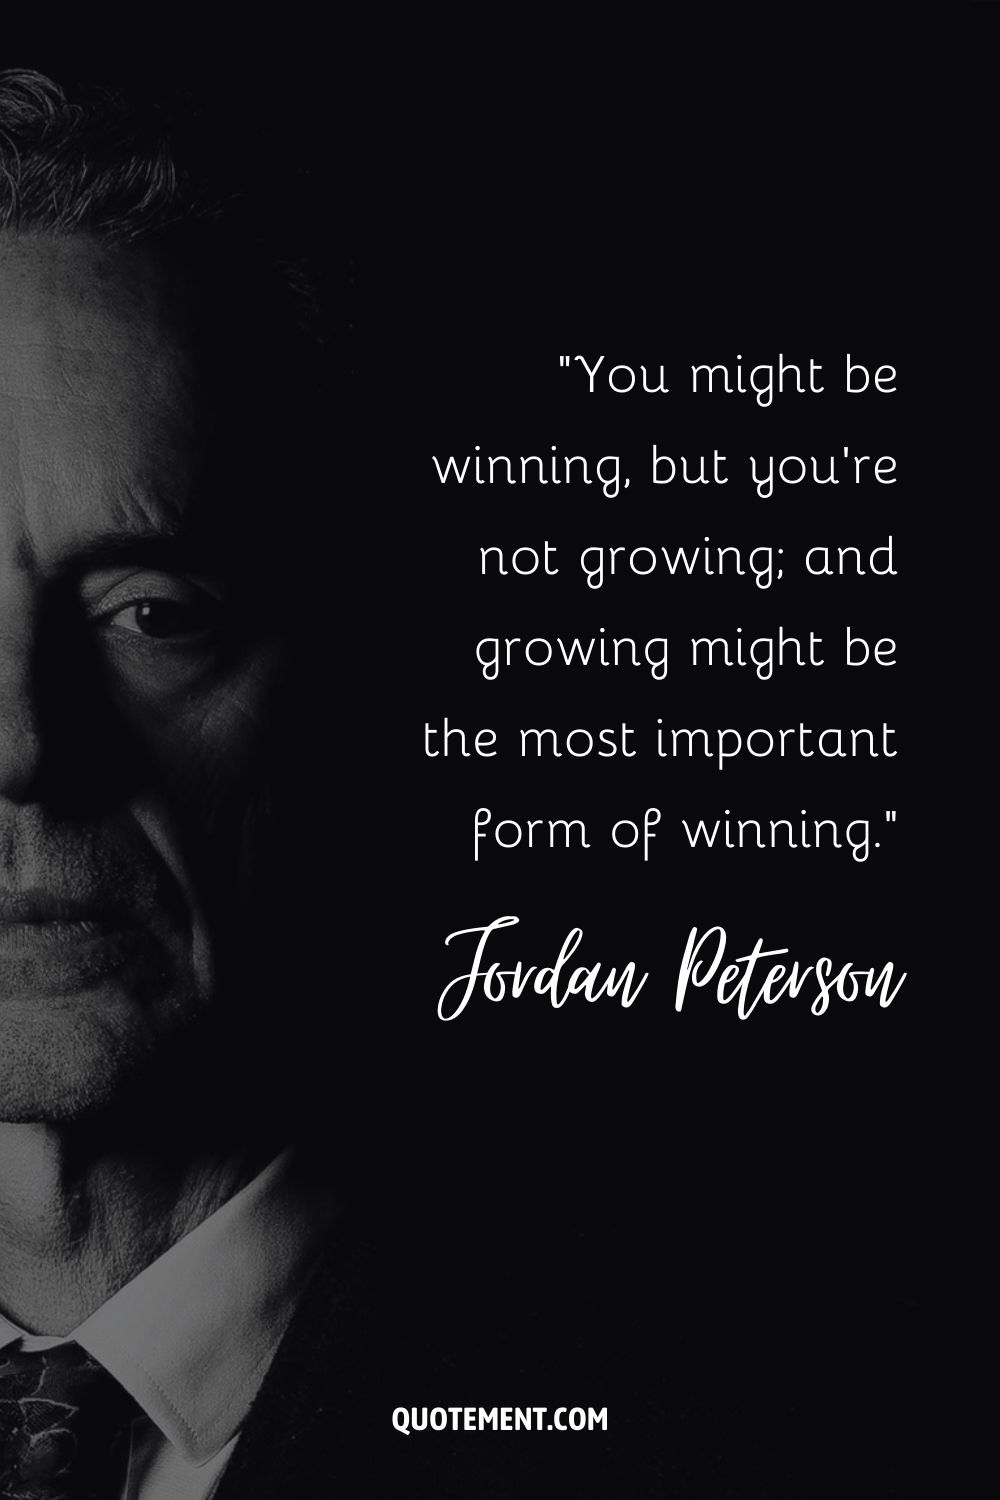 Puede que estés ganando, pero no estás creciendo, y crecer puede ser la forma más importante de ganar.